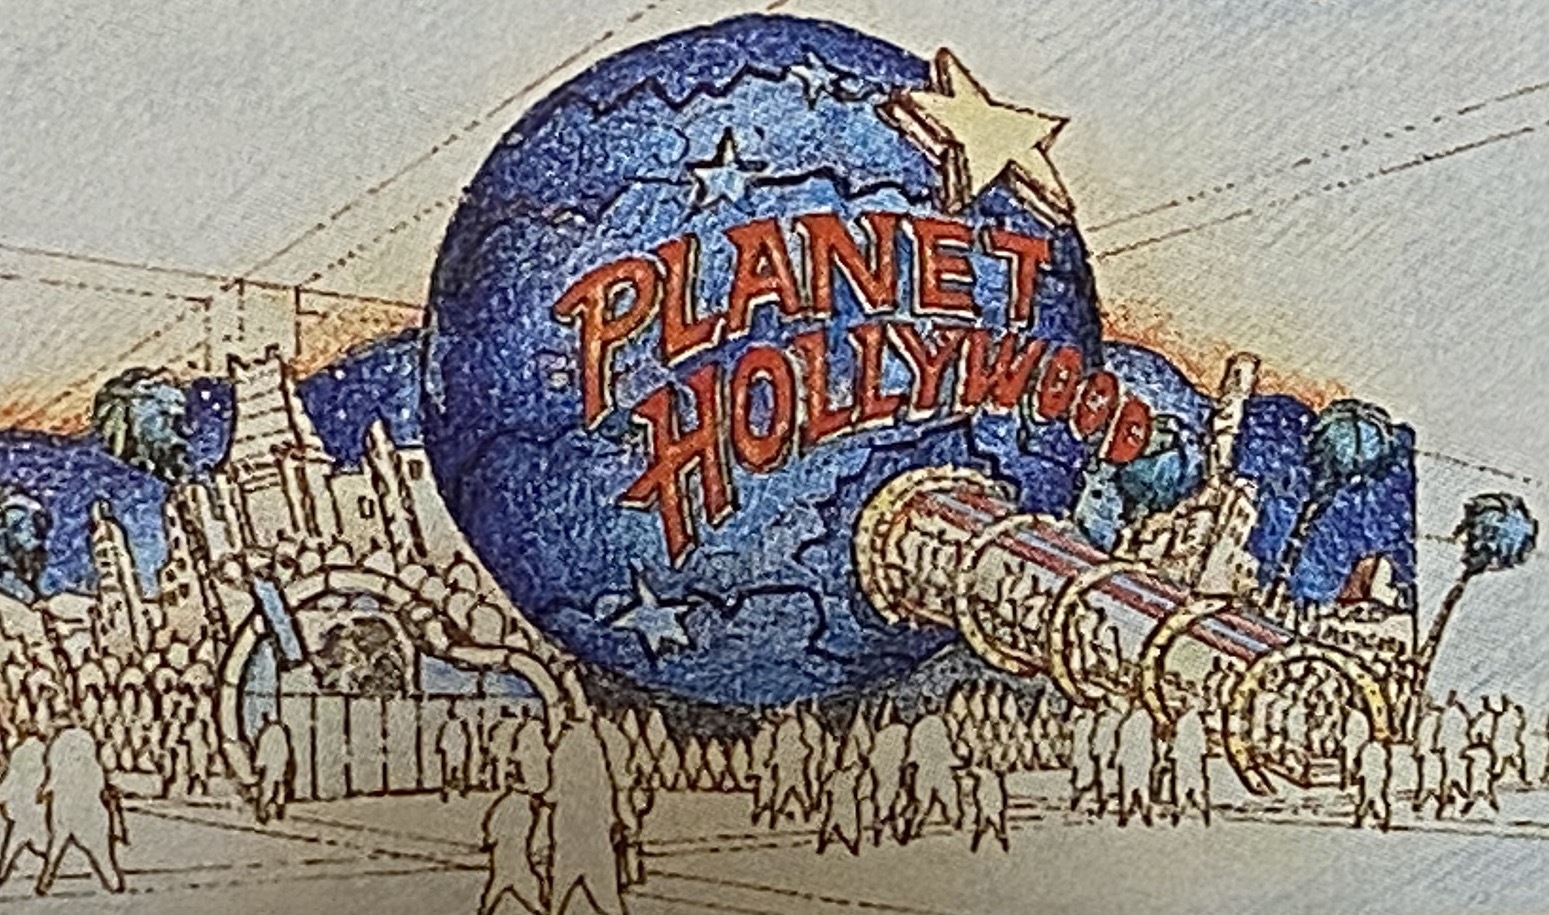 Planet Hollywood (Disney Village) fermeture définitive 7 Janvier 2023 - Page 10 4qt6